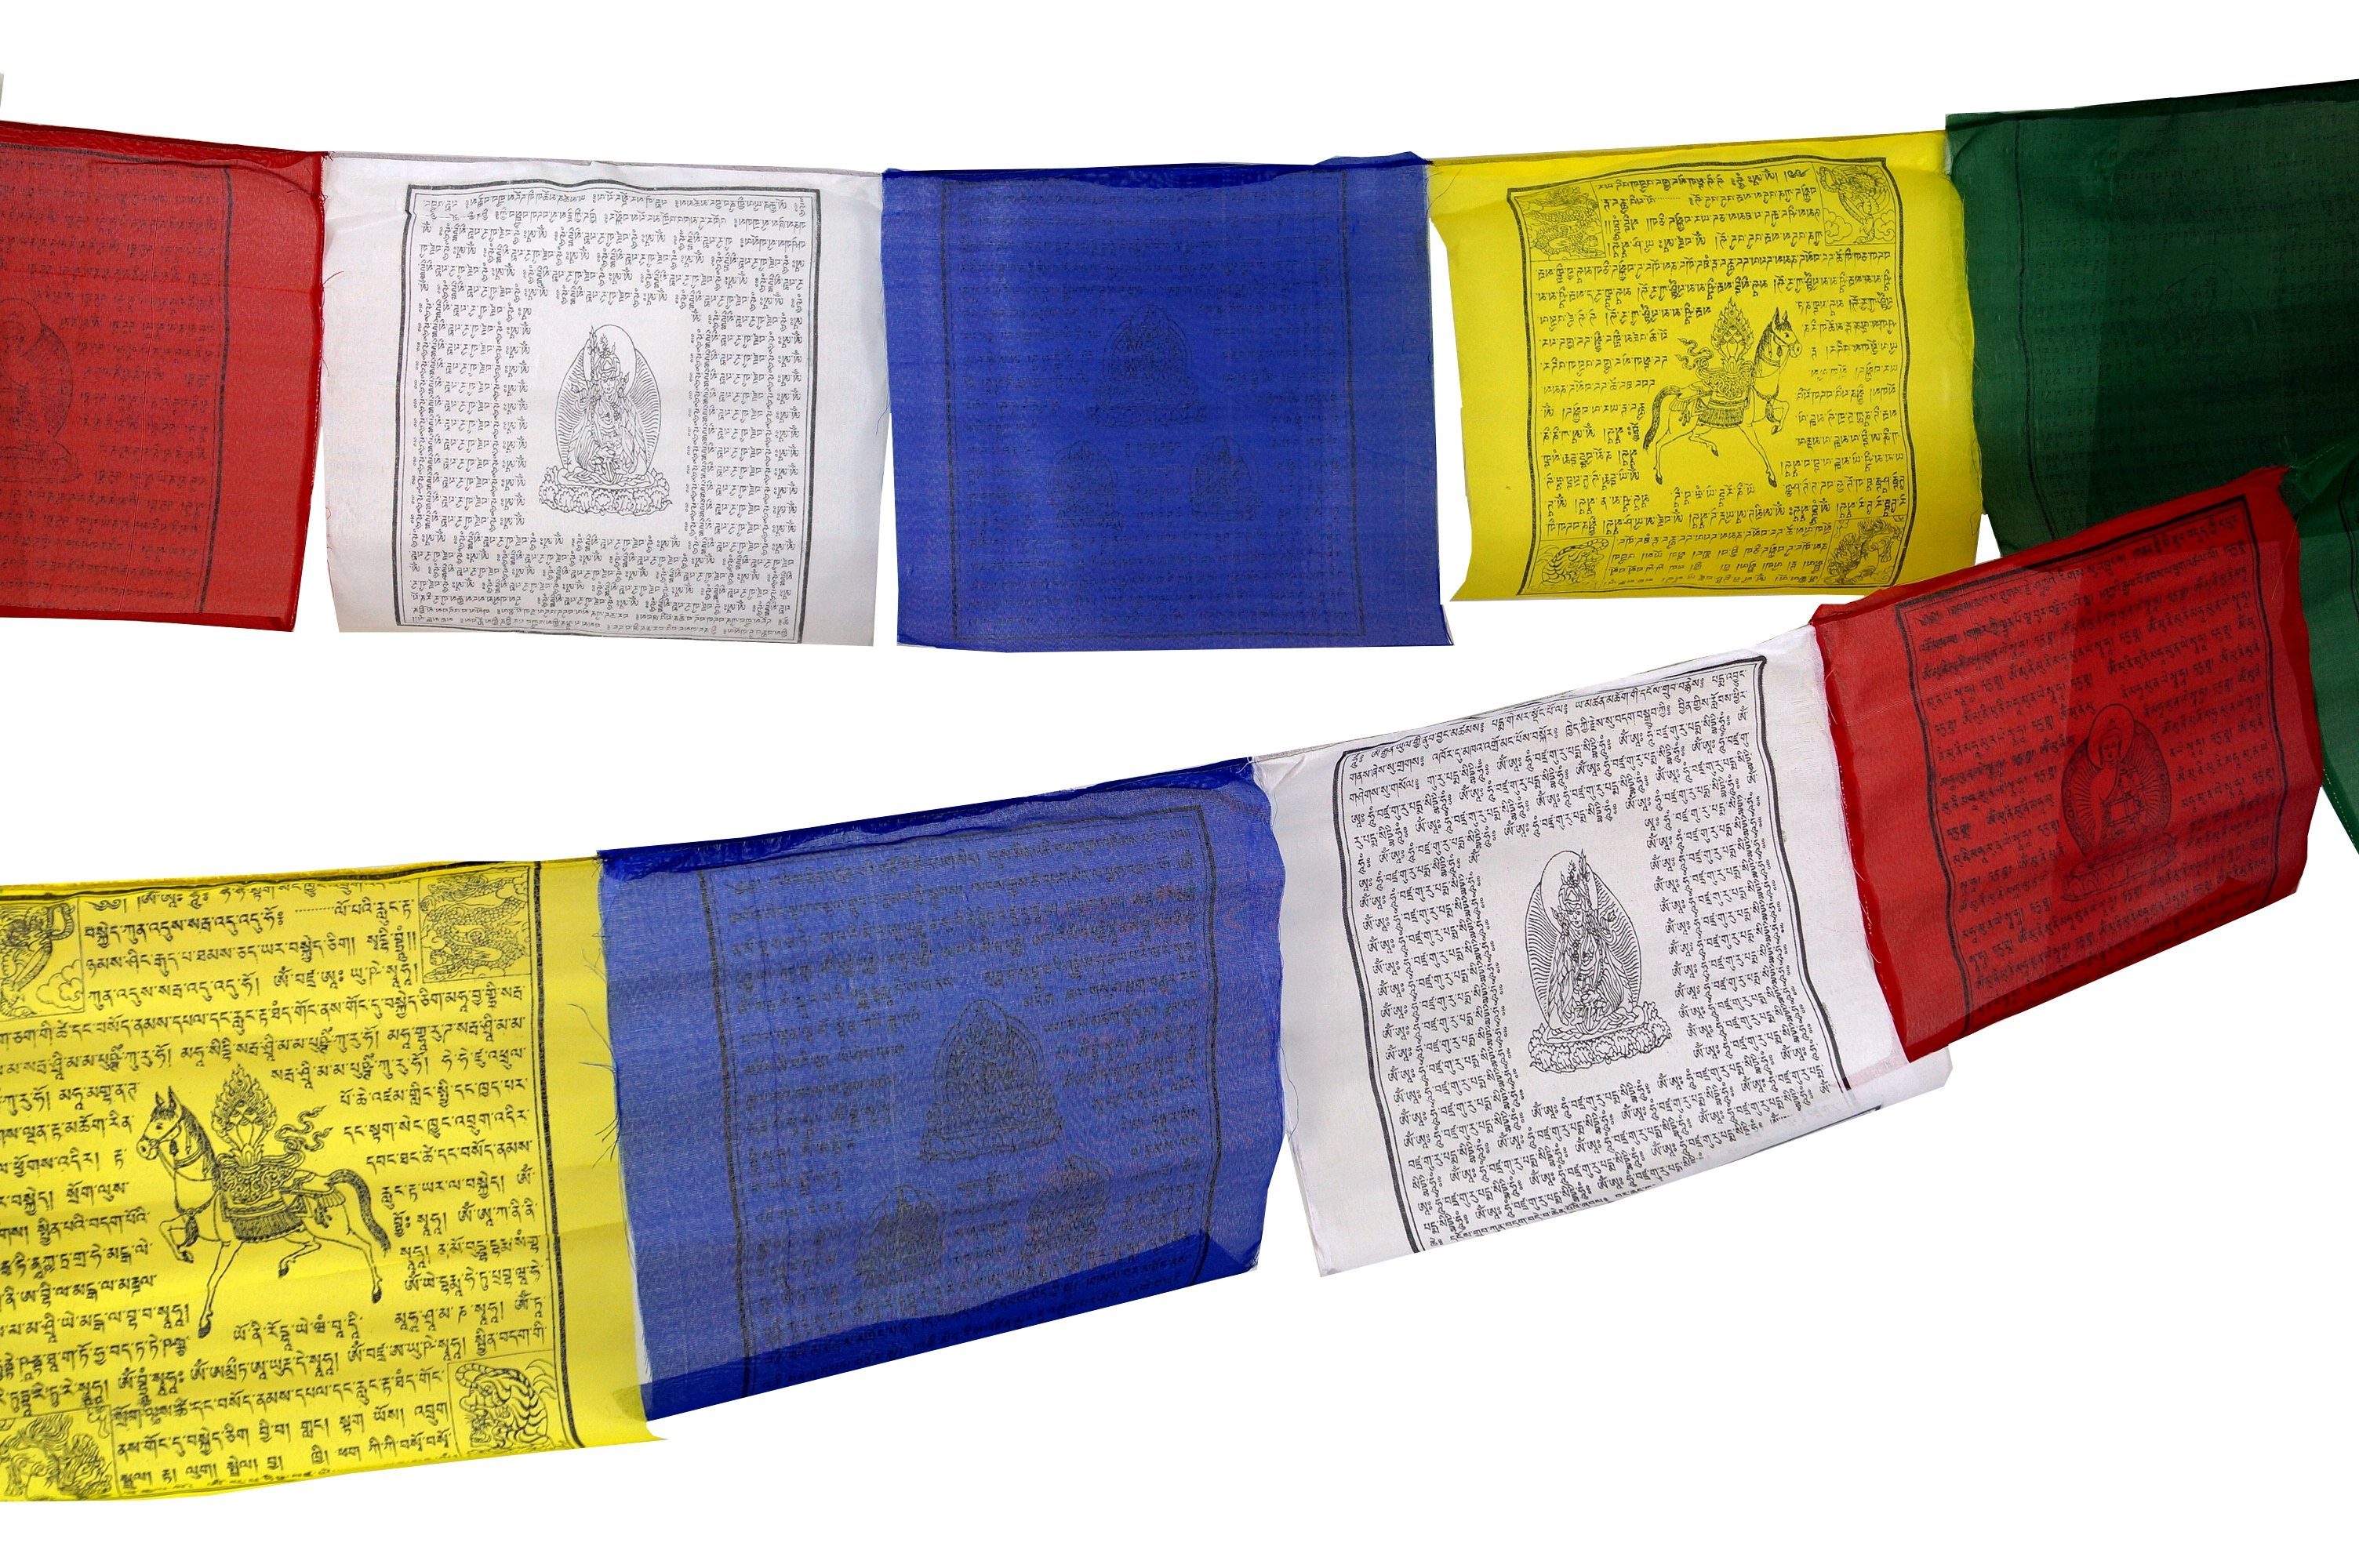 Guru-Shop Wimpelkette in m cm) Längen.. Tibetische Gebetsfahne (wimpel lang 17*14 verschiedenen 4,50